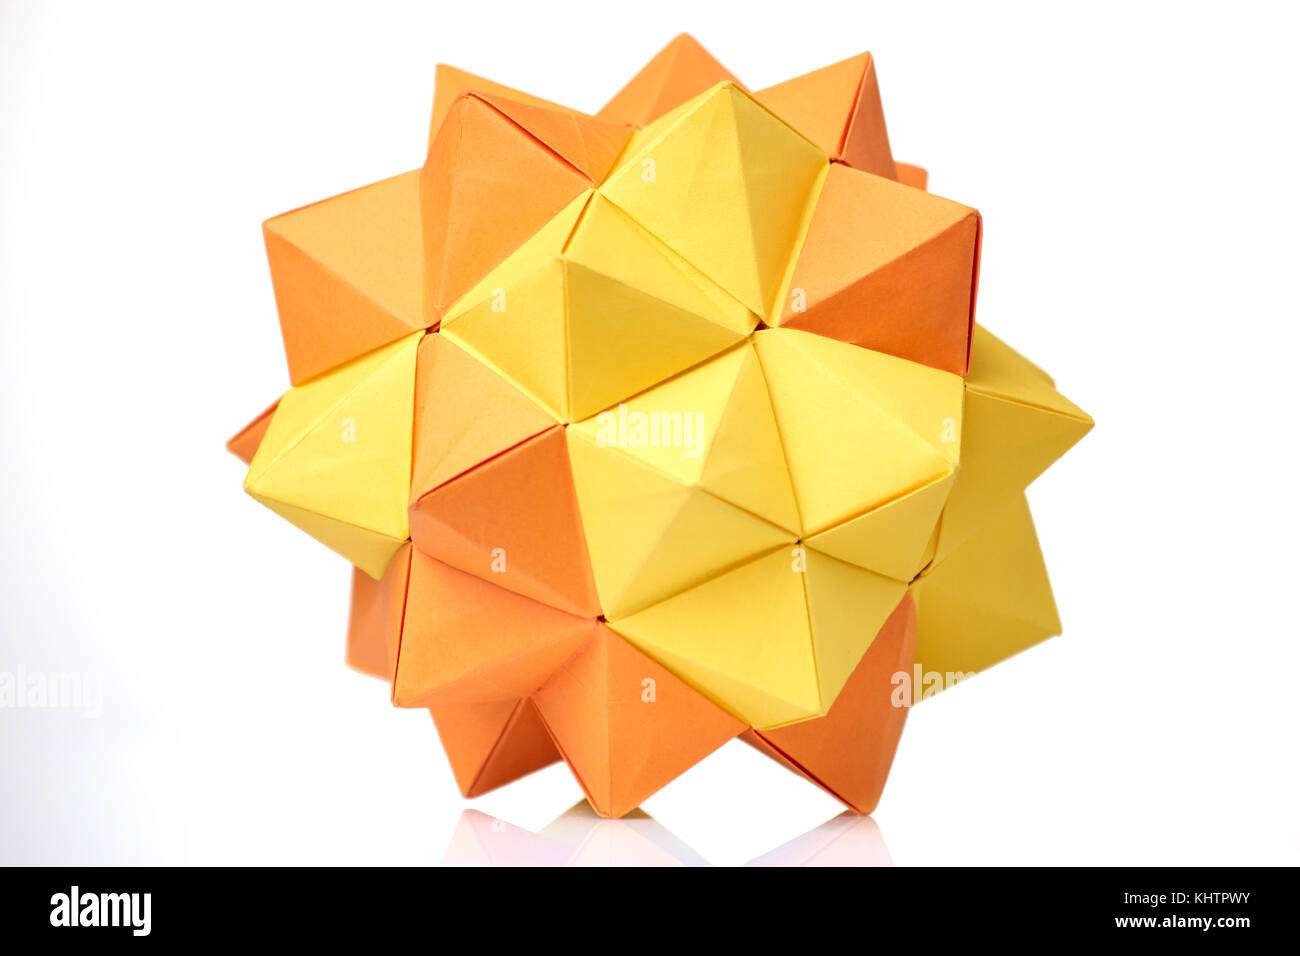 Modular origami model on white Stock Photo - Alamy